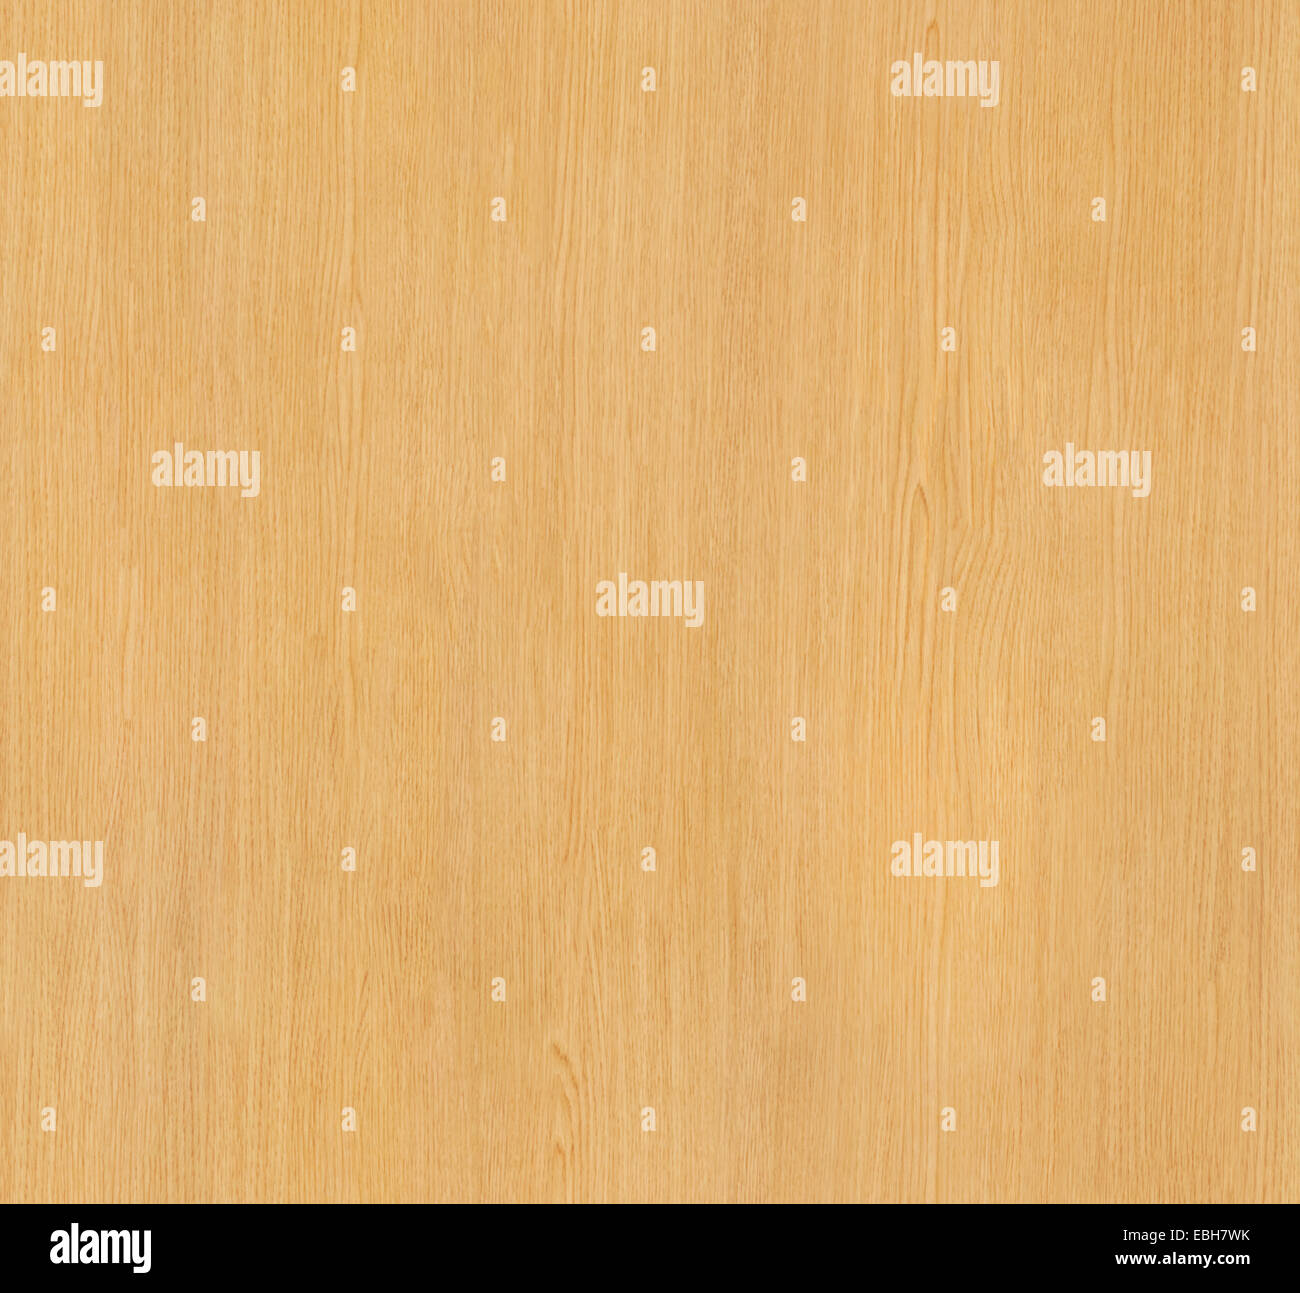 Texture de fond sans soudure en bois clair avec des grains et des nœuds, l'arrière-plan peut être carrelées. Banque D'Images